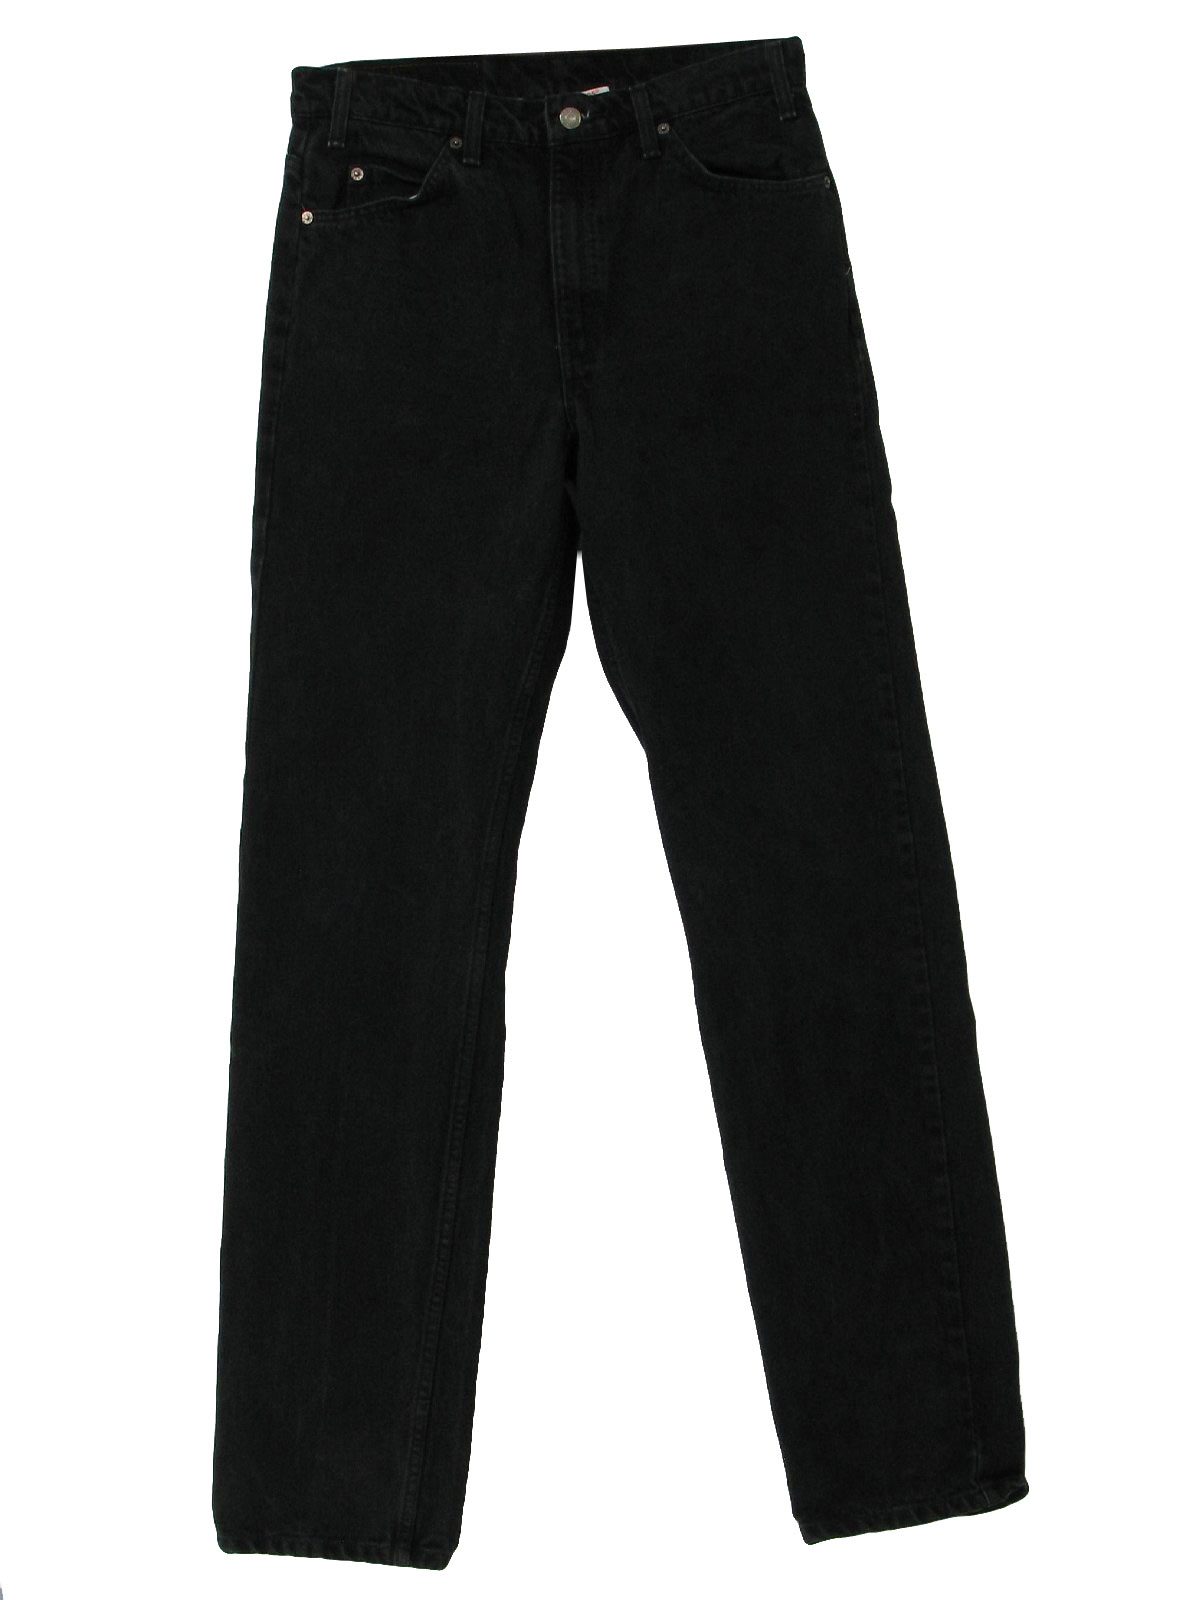 Vintage Levis Nineties Pants: 90s -Levis- Mens faded black cotton denim ...